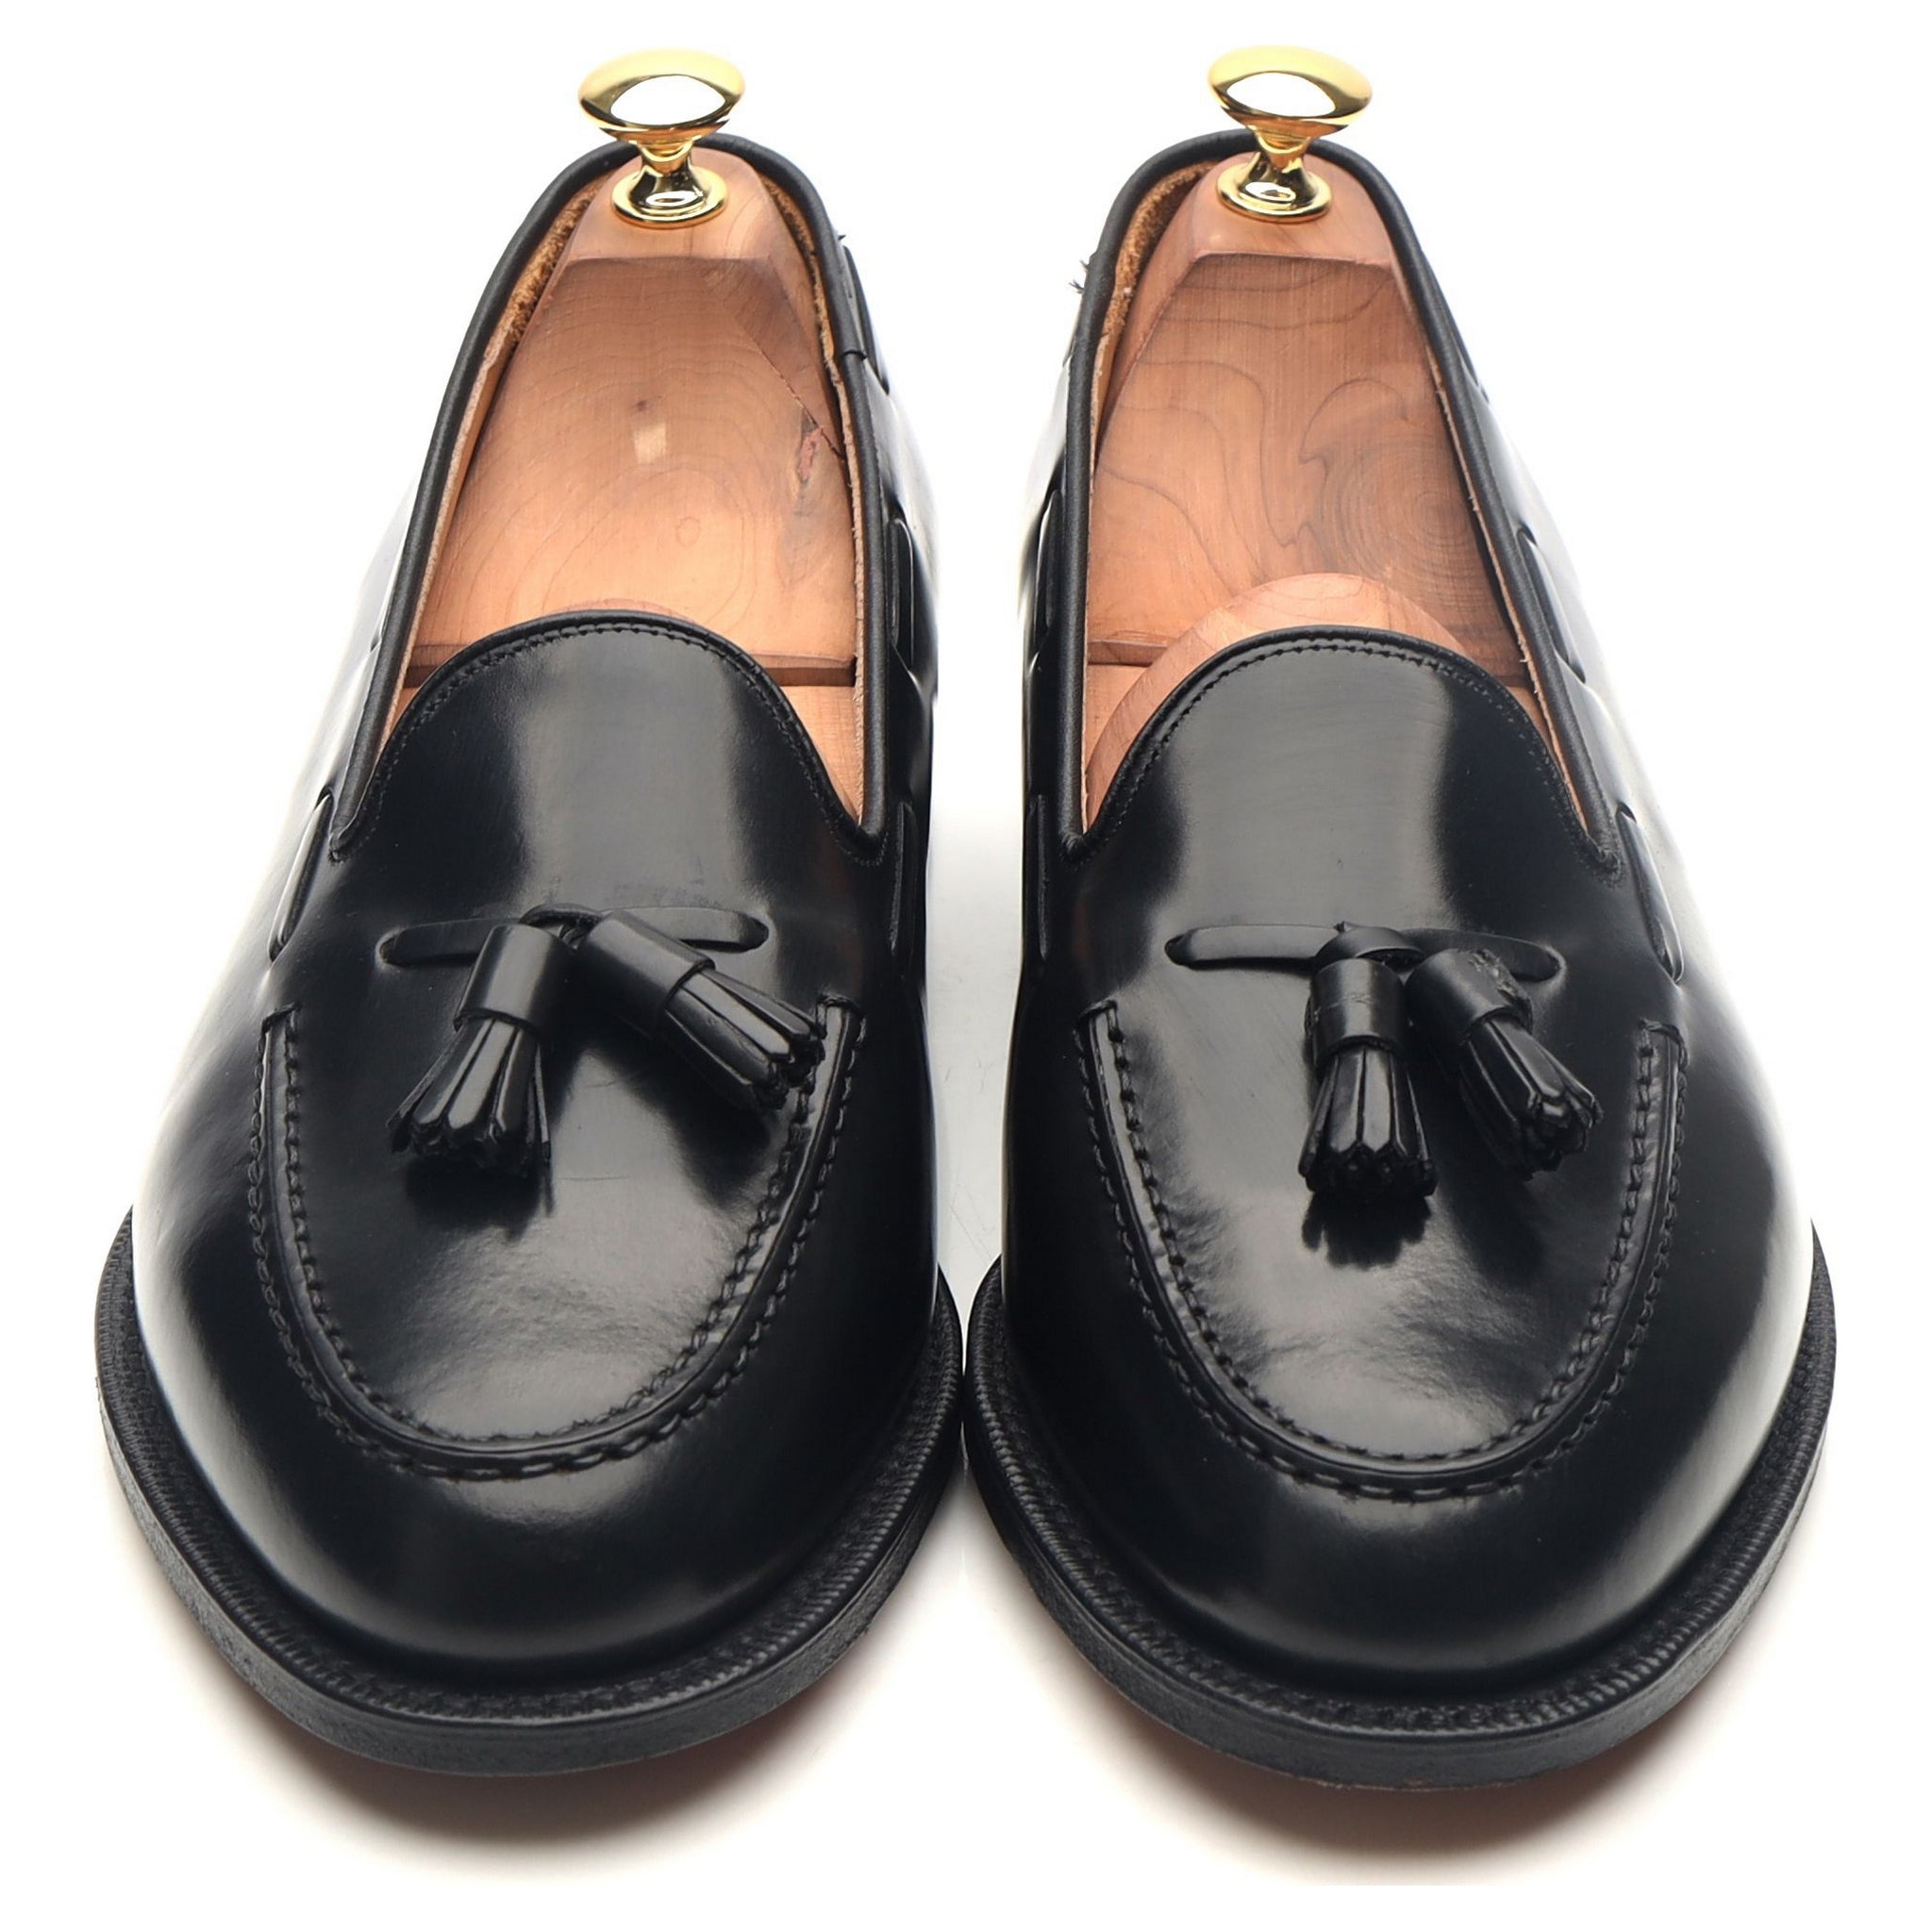 Keats II' Black Leather Tassel Loafers UK 9 G - Abbot's Shoes